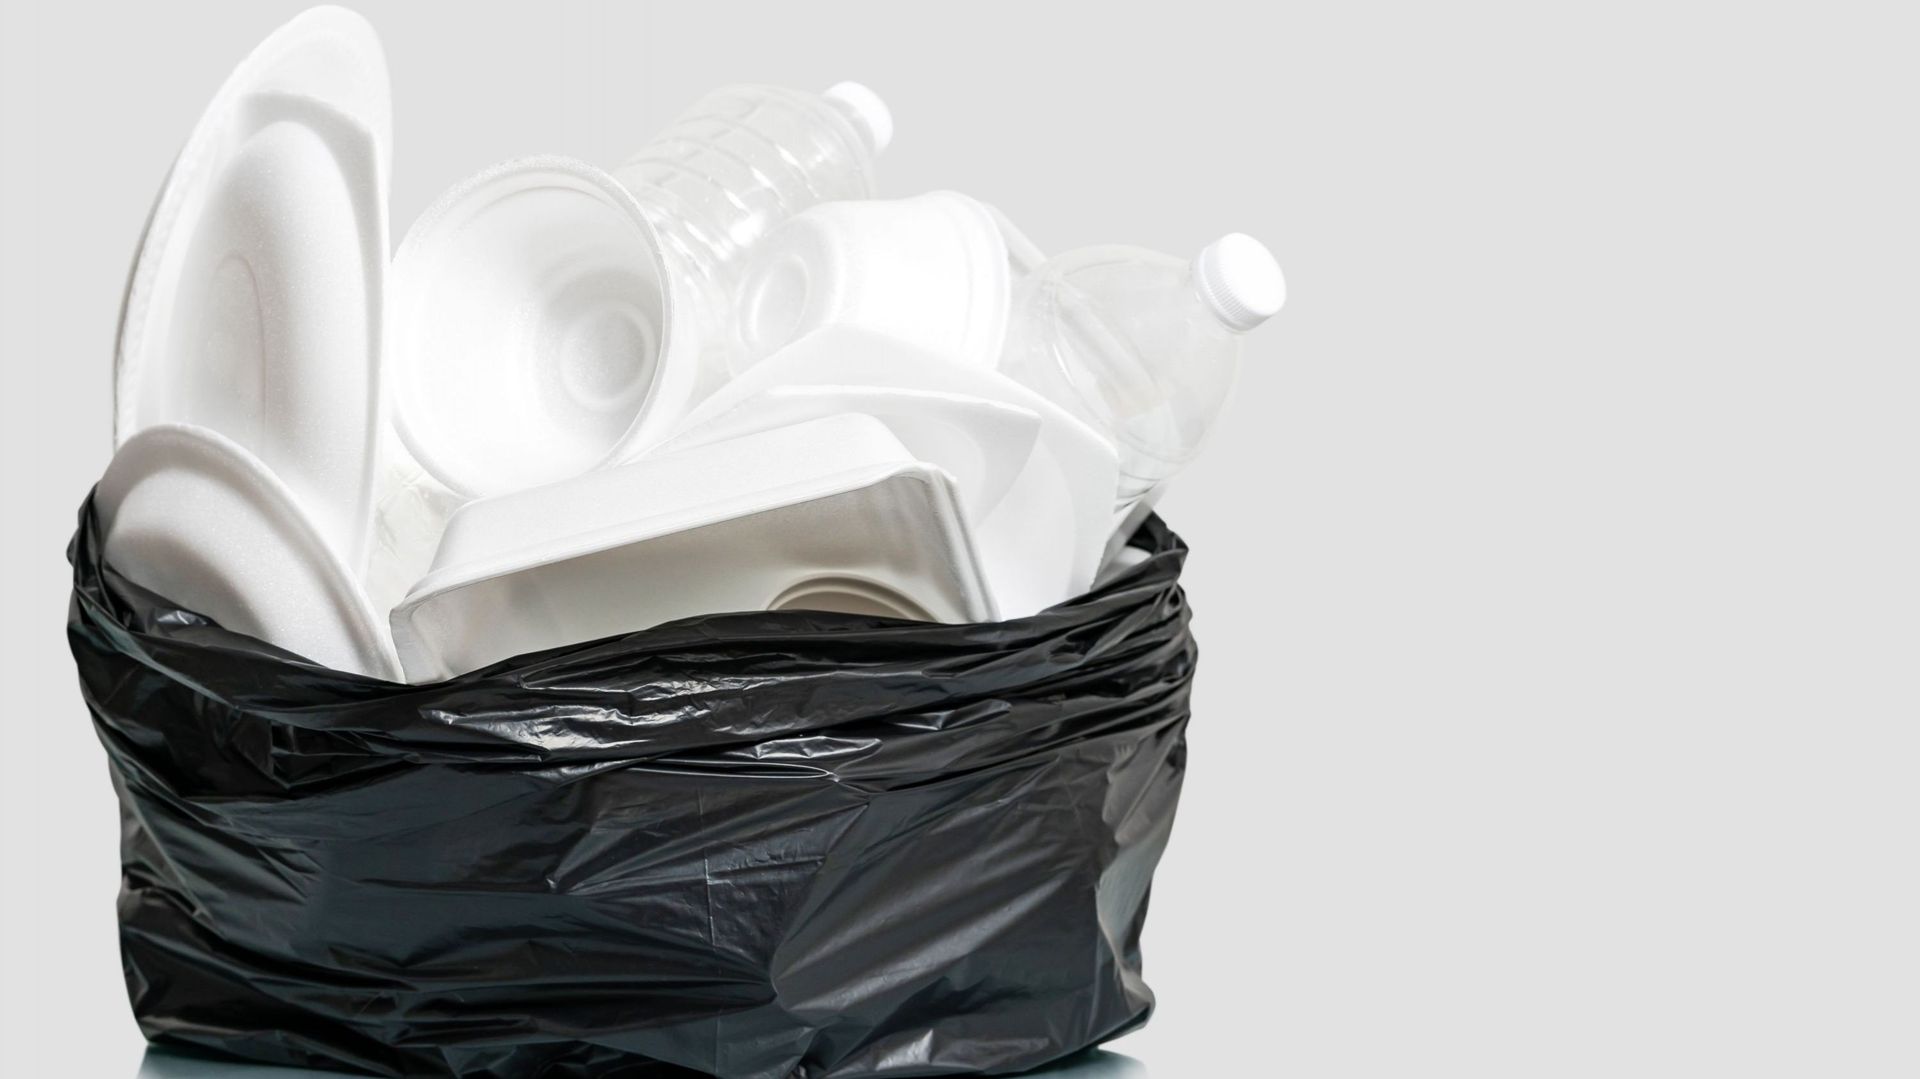 Les cotons-tiges et la vaisselle en plastique désormais interdits en Belgique